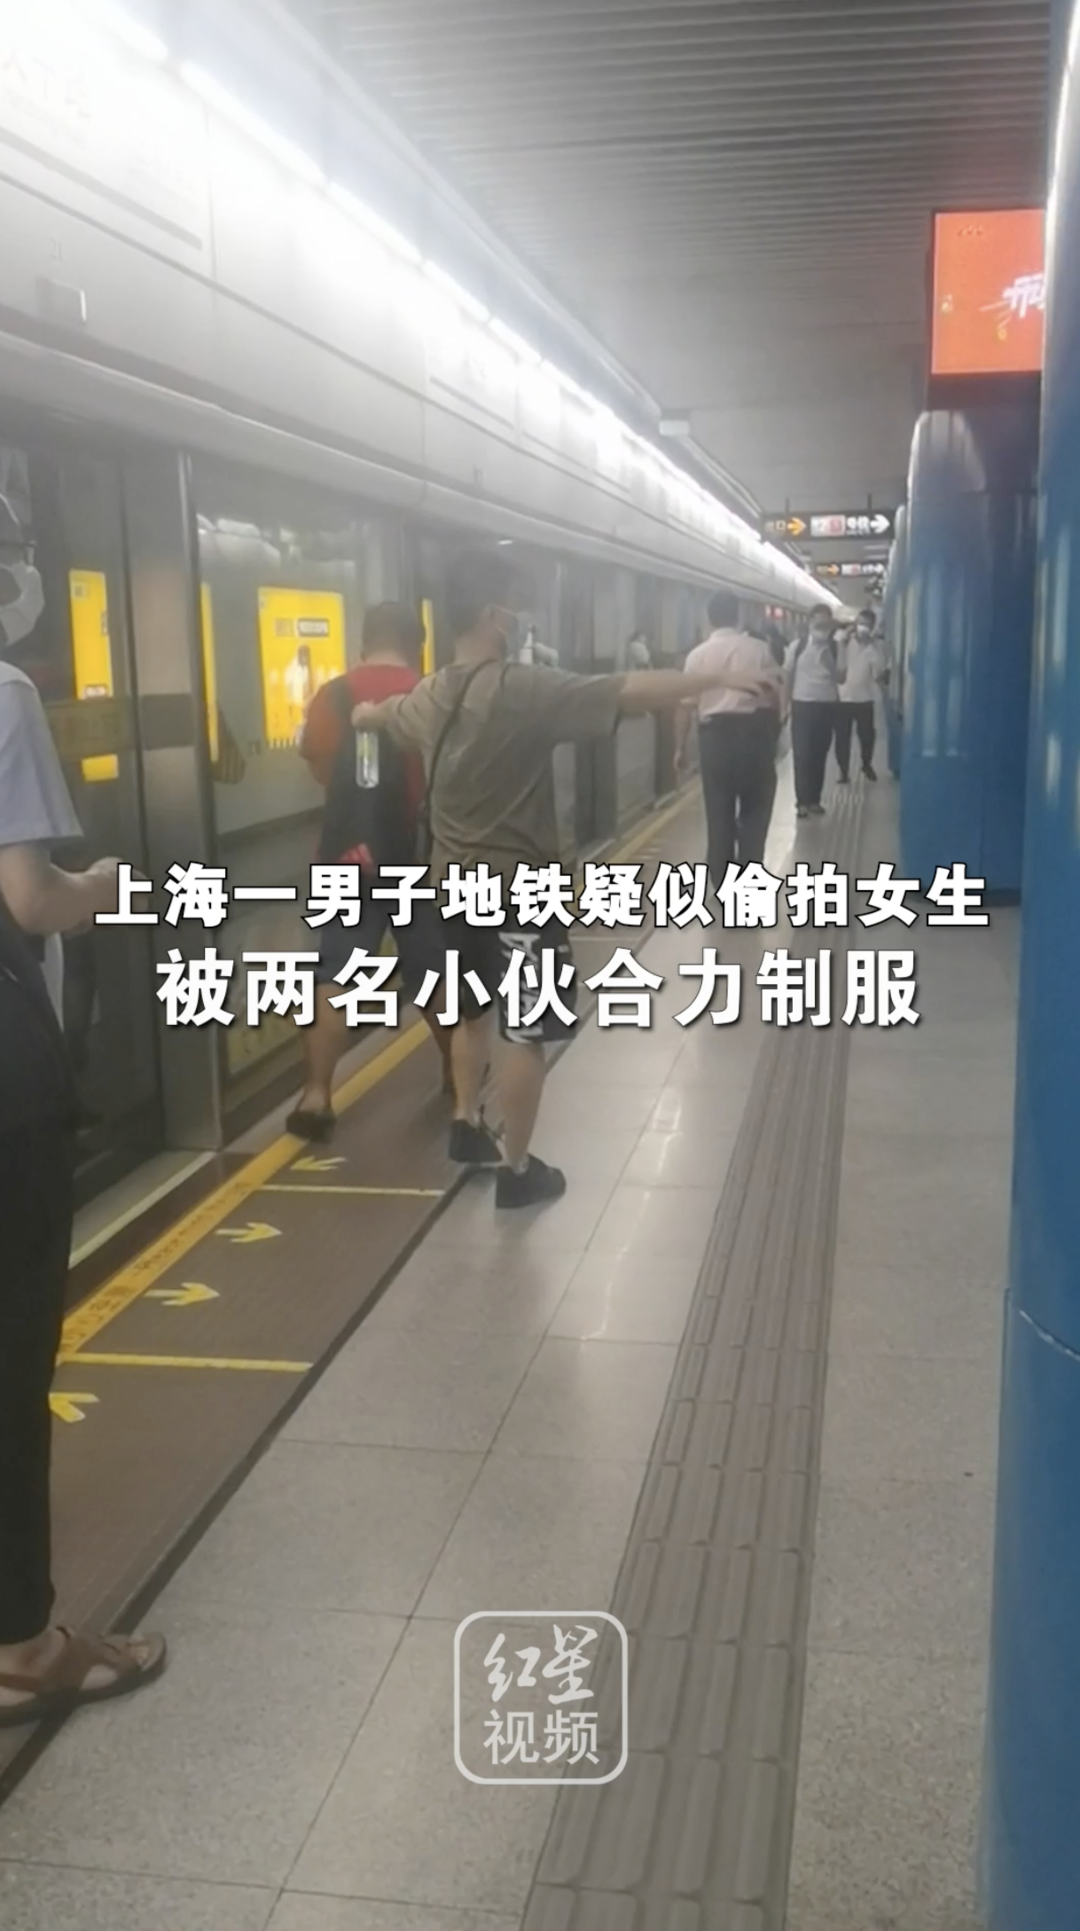 男子地铁疑似偷拍女生，被两名小伙合力制服。拍摄者：男子边反抗边试图删除照片